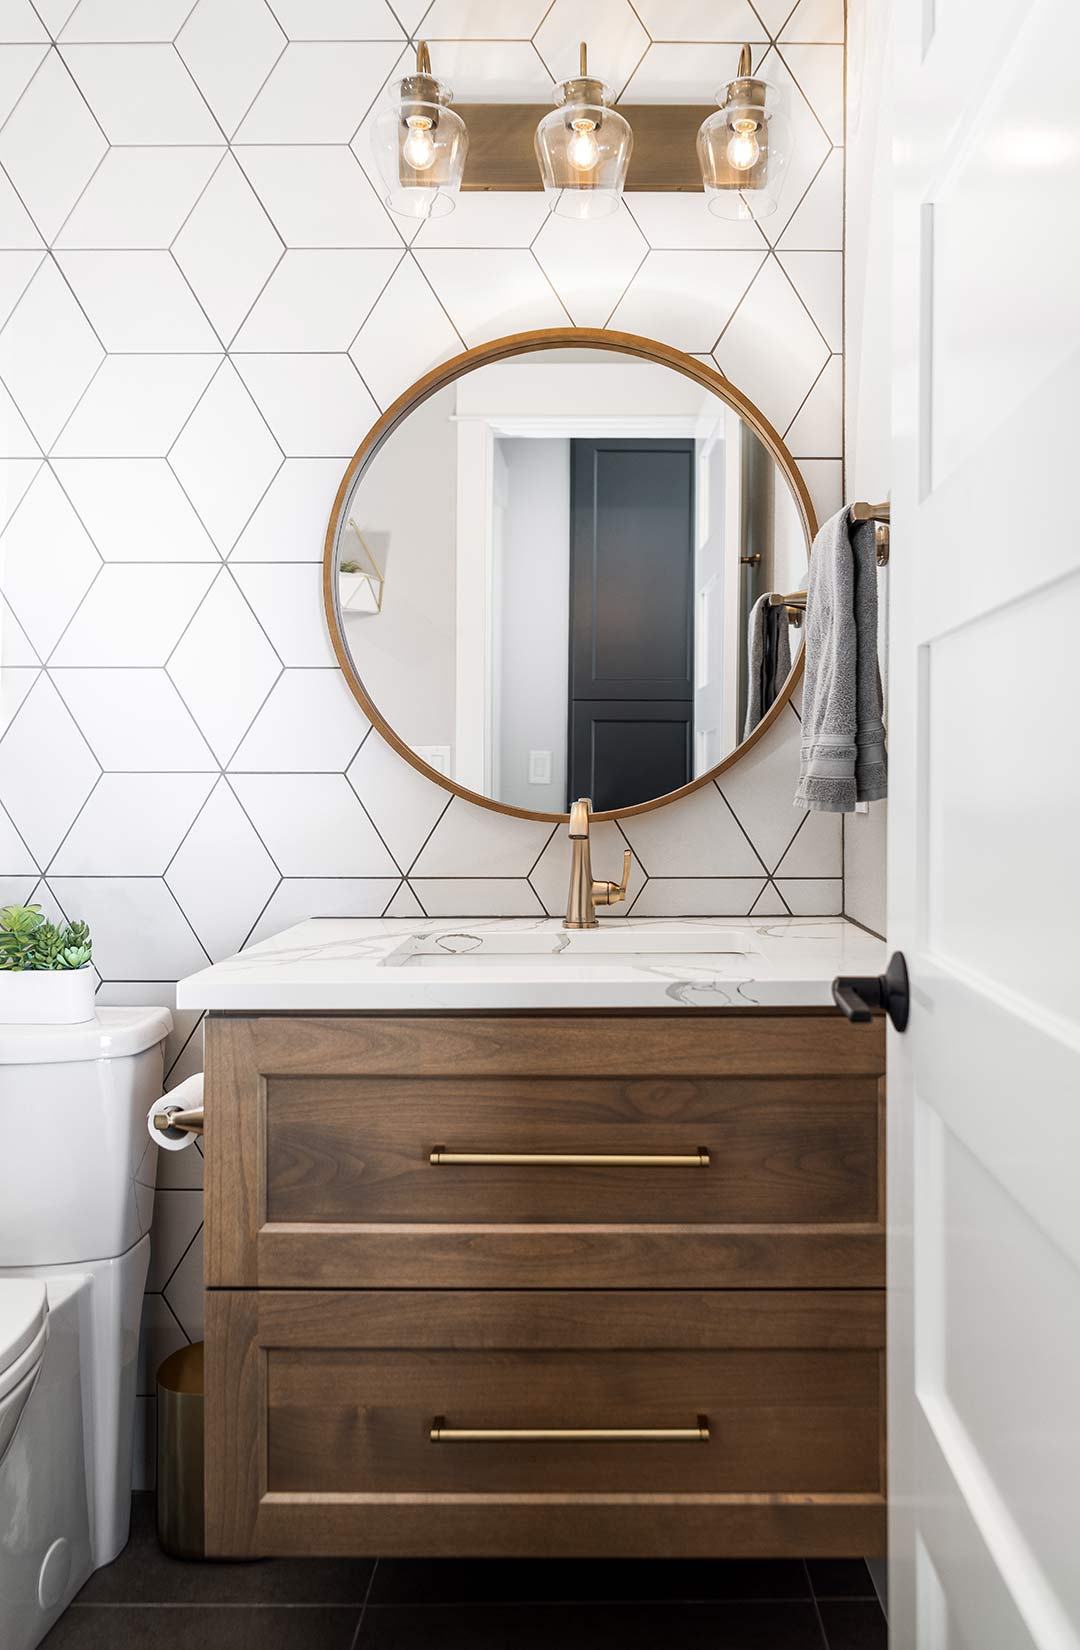 Transitional bathroom vanity with long modern brass pulls, a brass faucet and a modern brass light fixture.